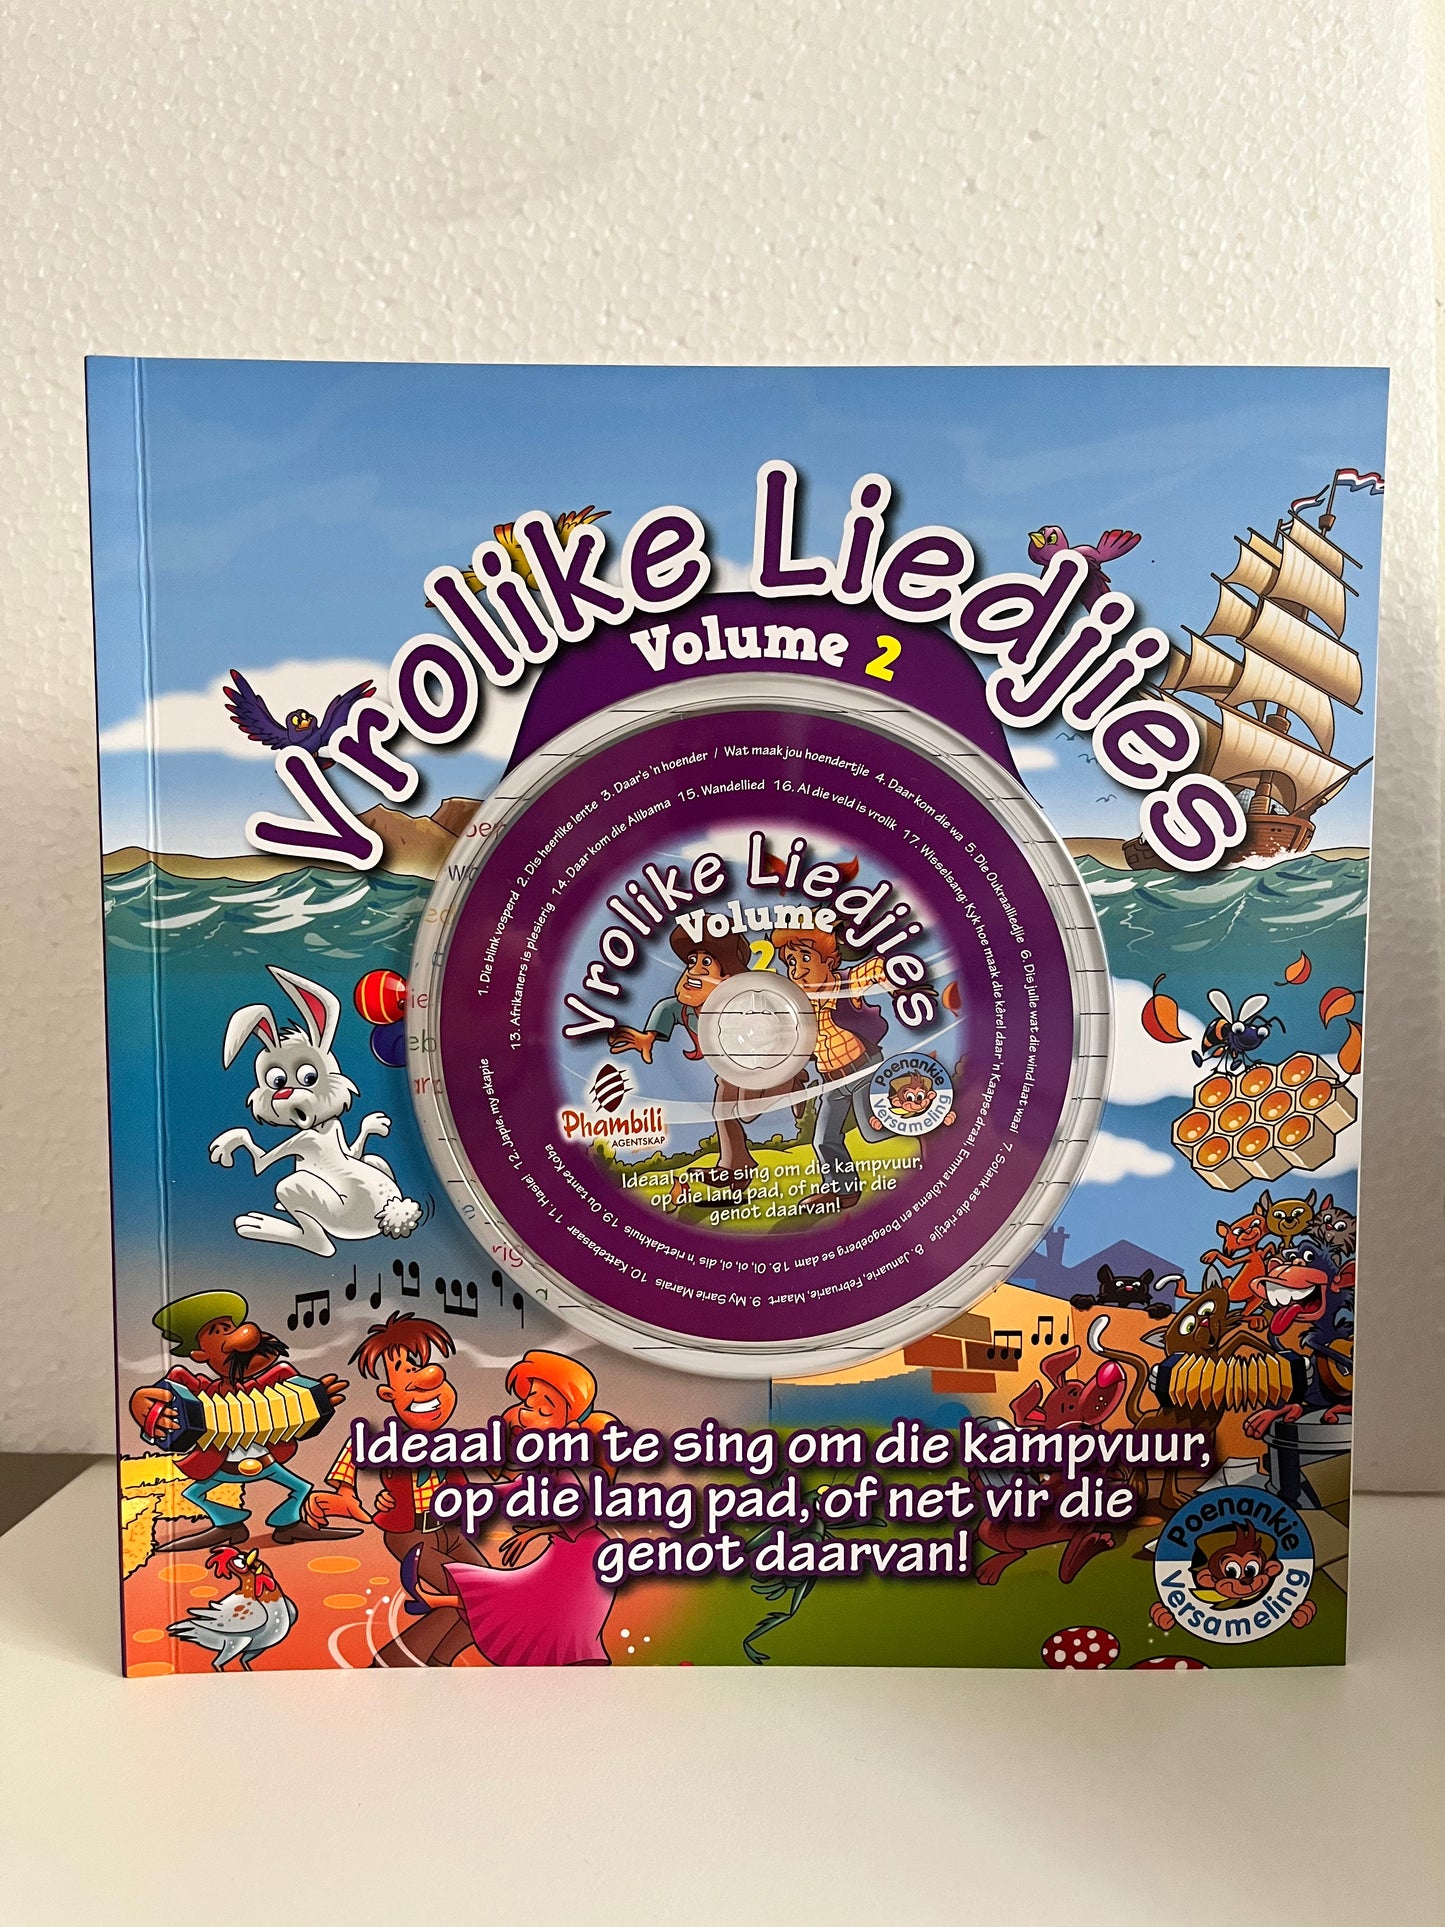 Vrolike Liedjies Volume 2 CD-boek